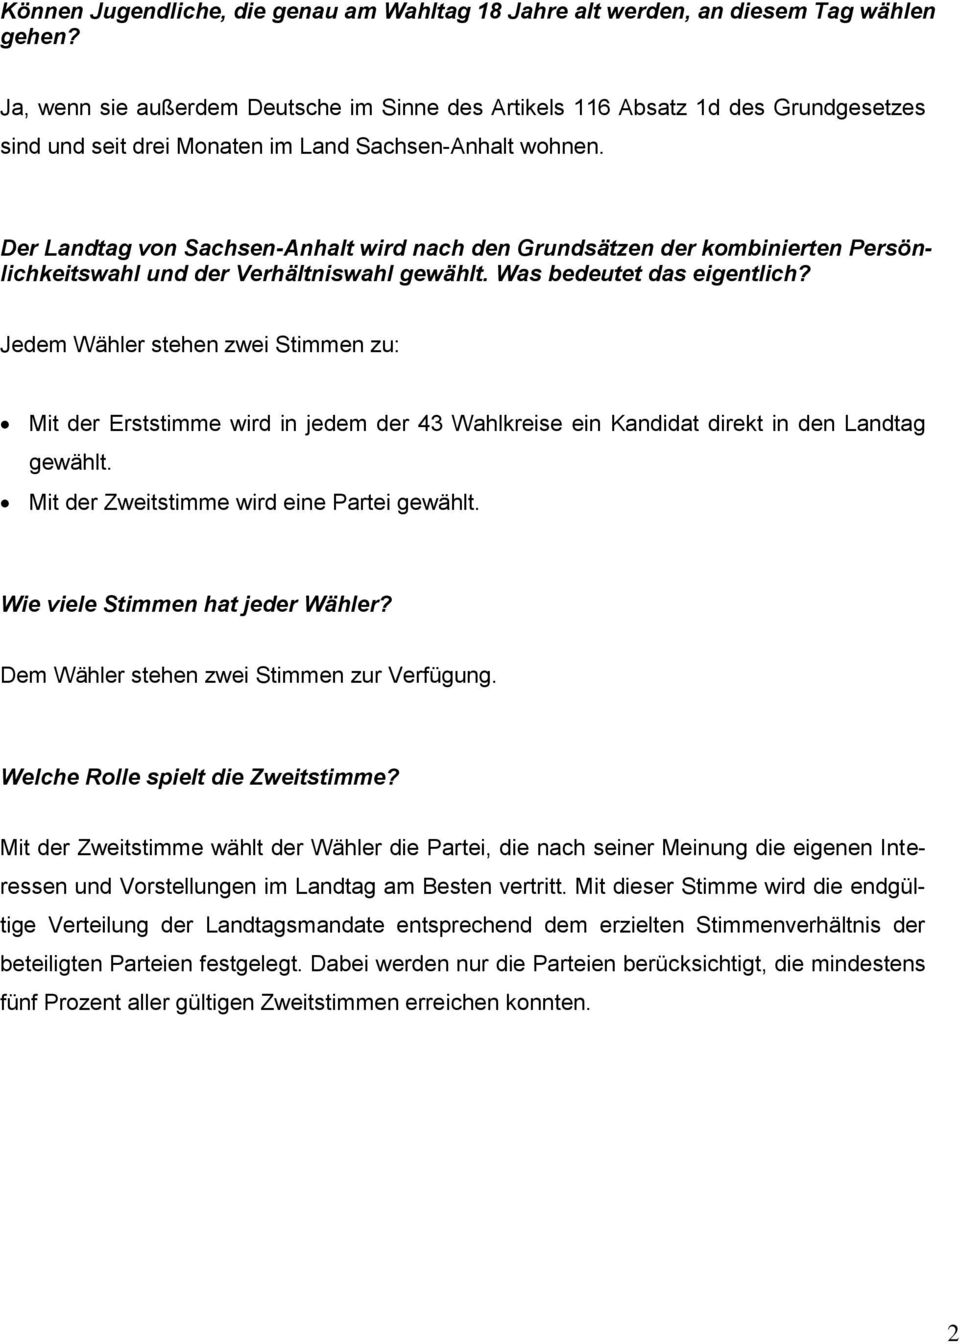 Der Landtag von Sachsen-Anhalt wird nach den Grundsätzen der kombinierten Persönlichkeitswahl und der Verhältniswahl gewählt. Was bedeutet das eigentlich?